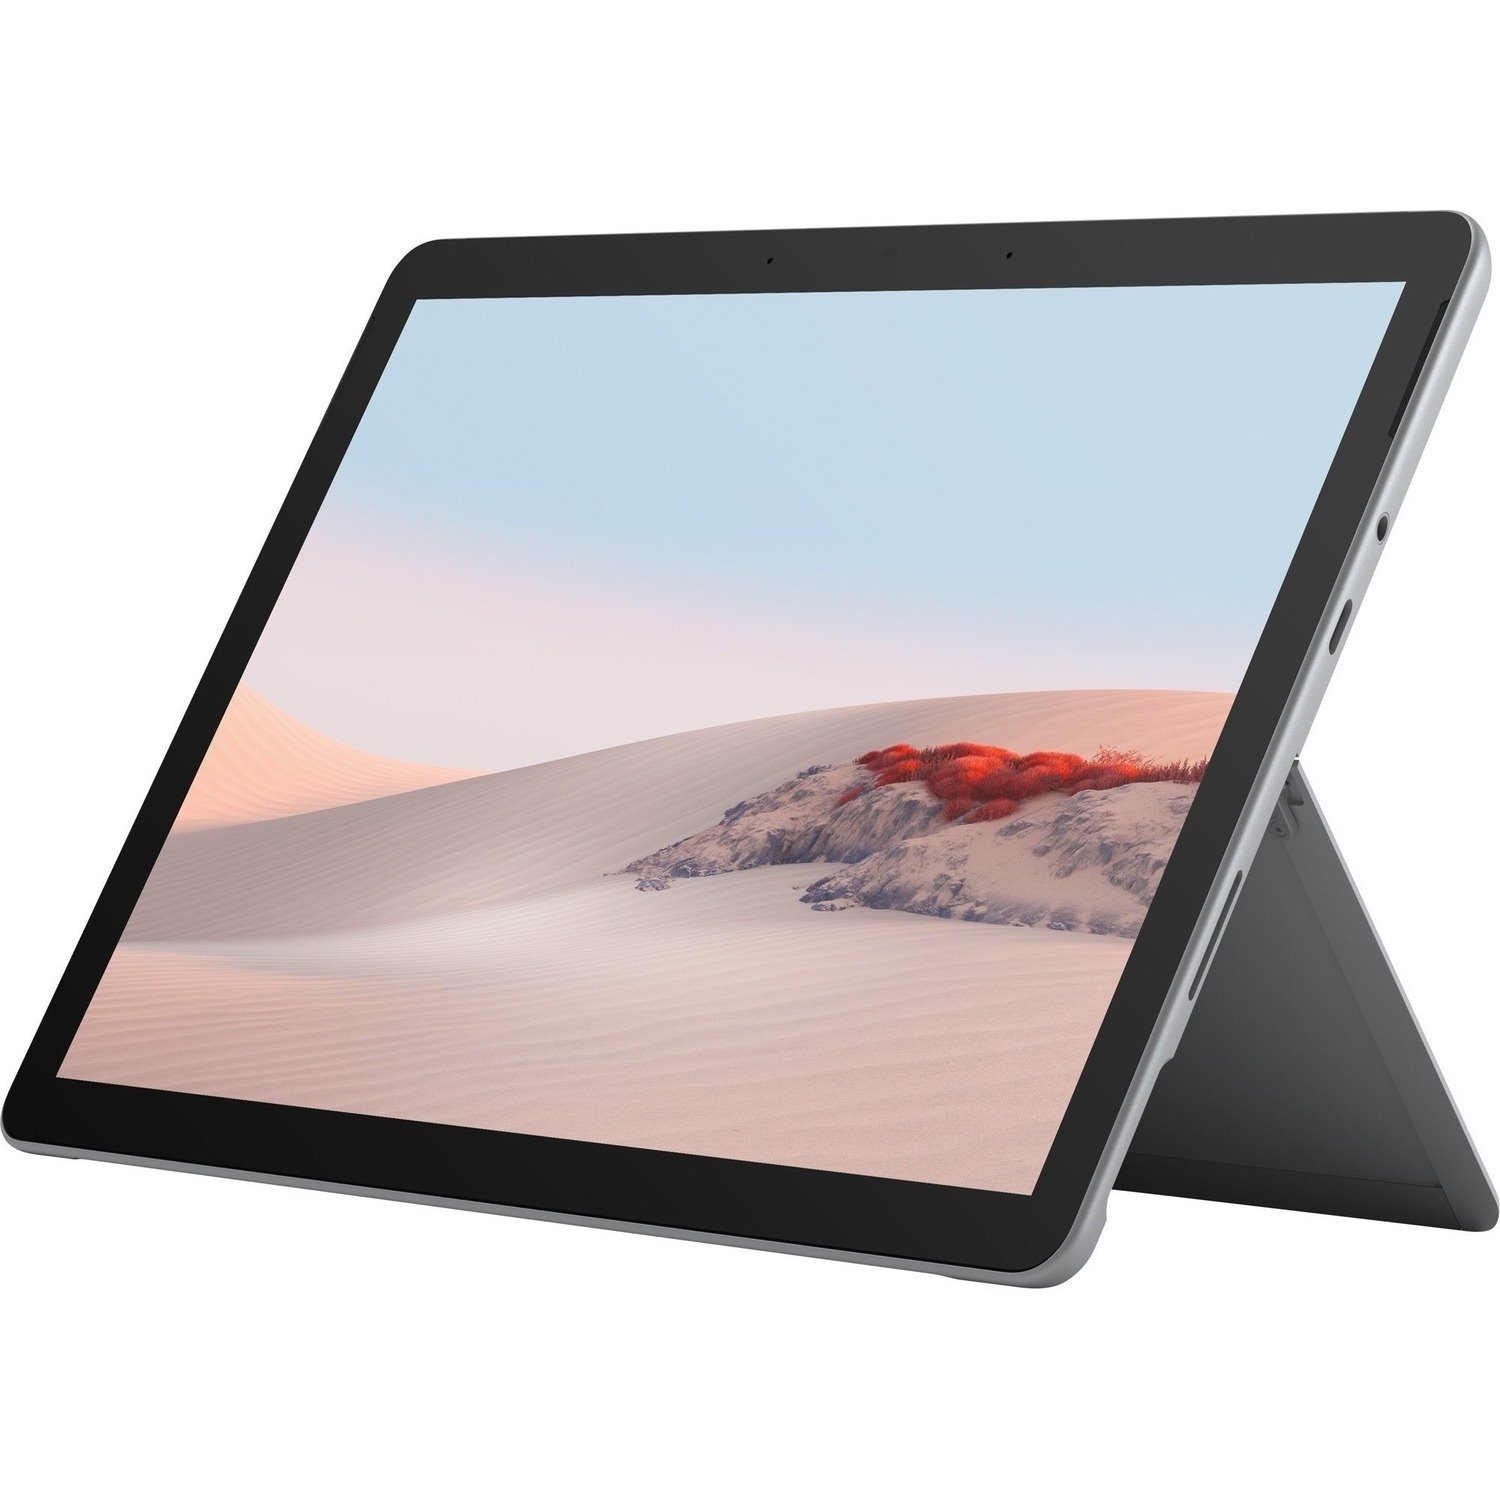 Microsoft Surface Go 2 Tablet - 26.7 cm (10.5") - Pentium Gold 4425Y - 4 GB RAM - 64 GB Storage - Windows 10 Pro - Platinum